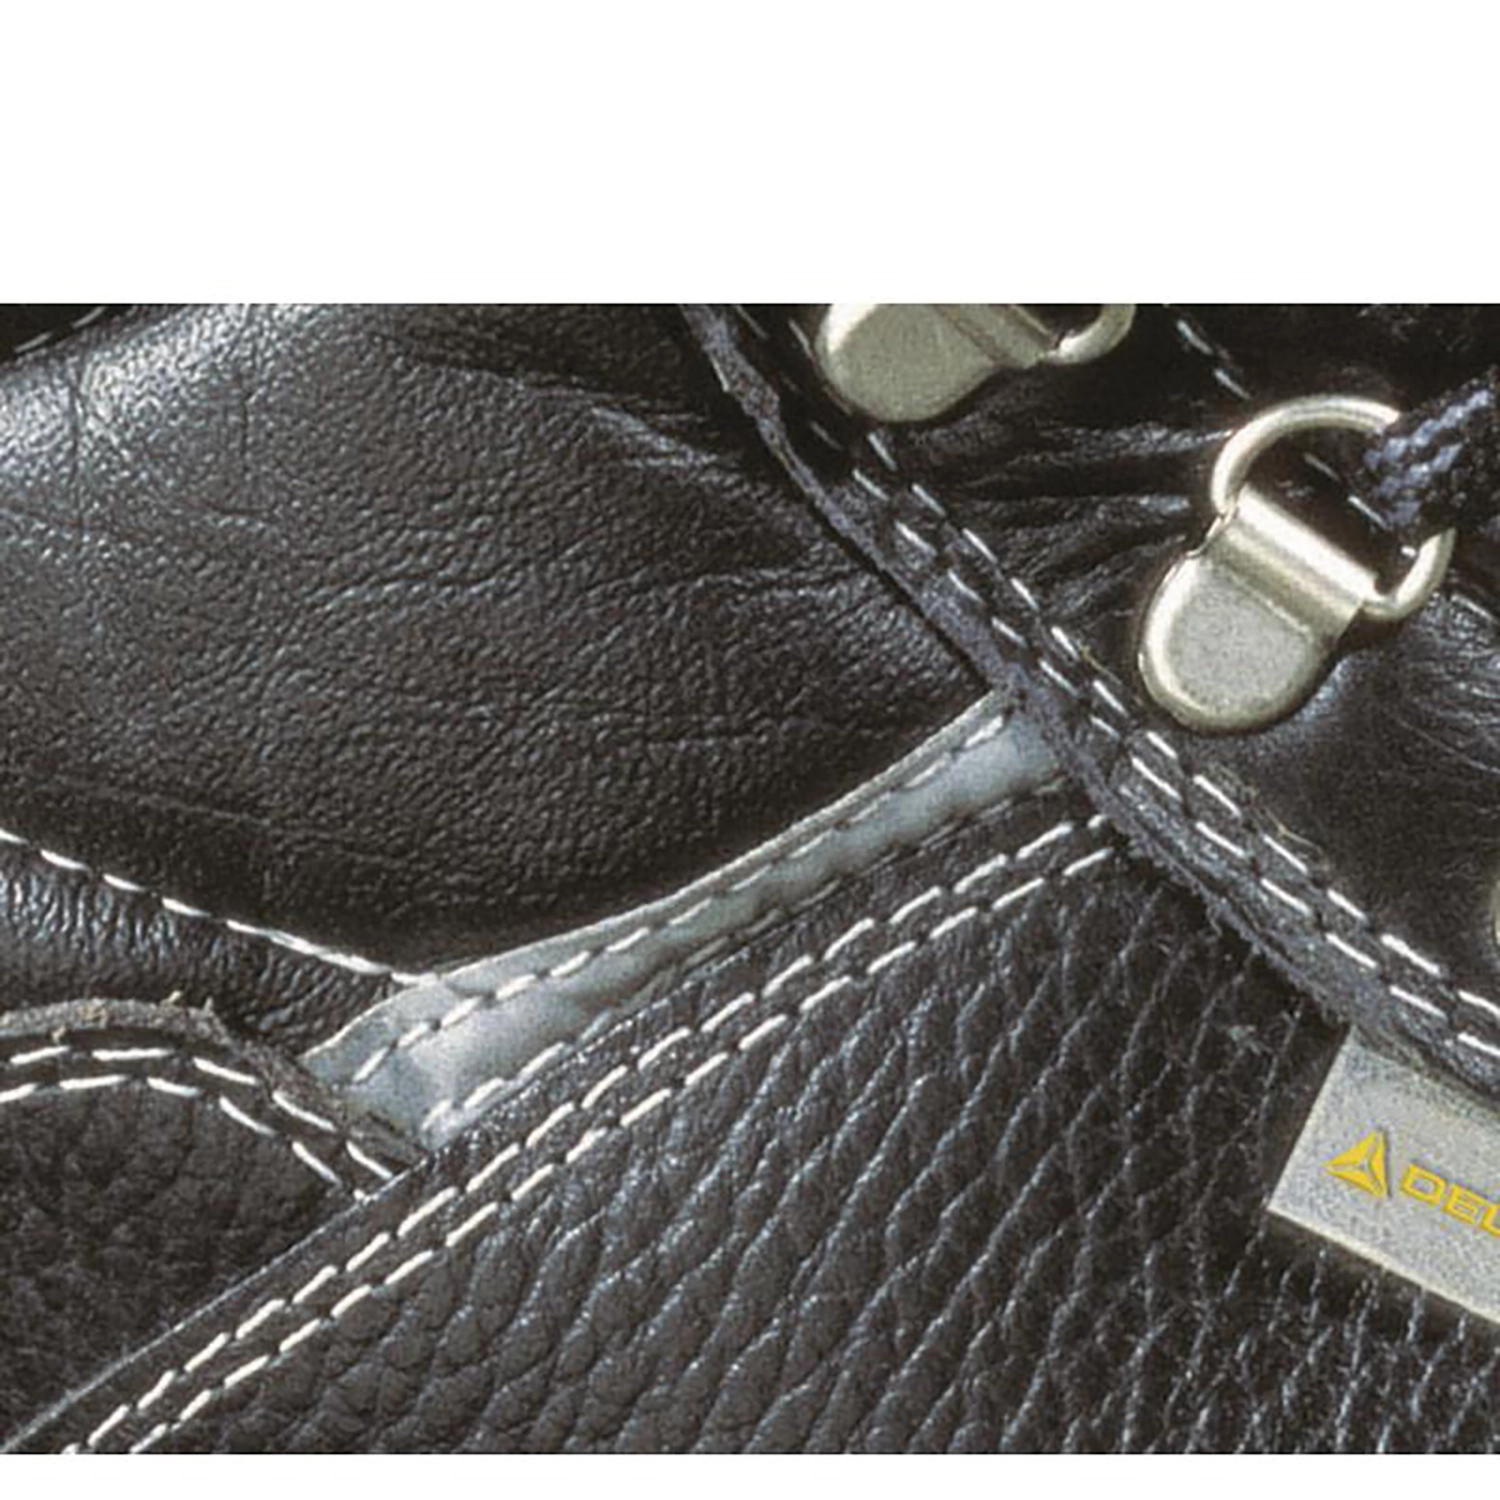 Hoog model schoenen - X-Large  - Sault S3 - zwart - maat 48